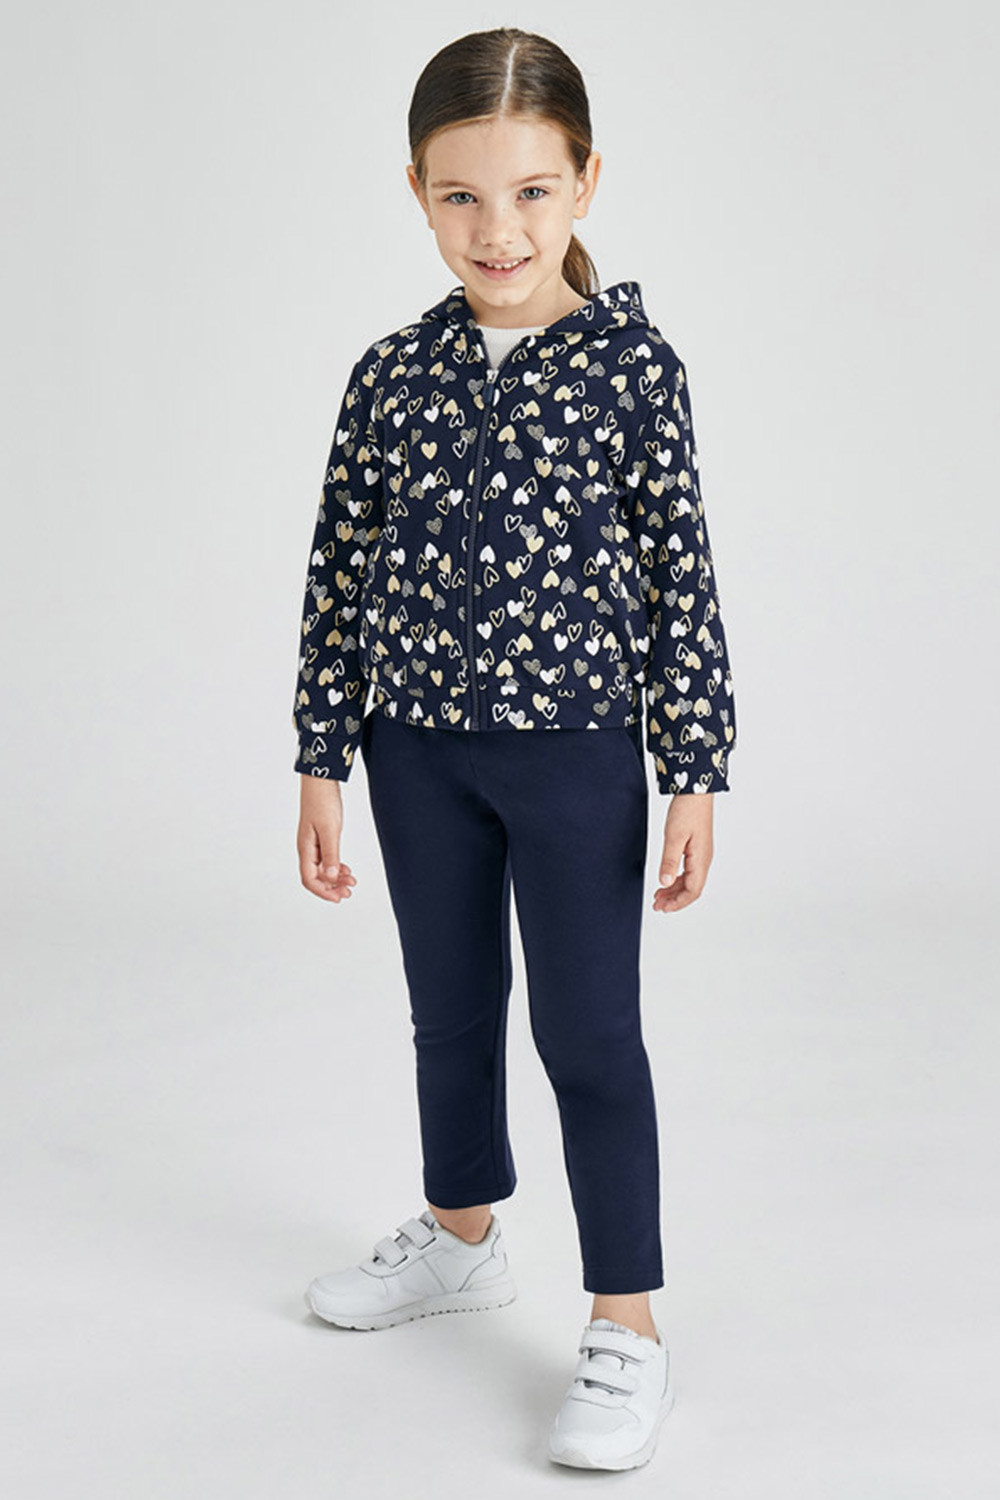 Mayoral Moda Infantil, S:A.U. Komplet - dziewczęca bluza i spodnie dresowe Hearts